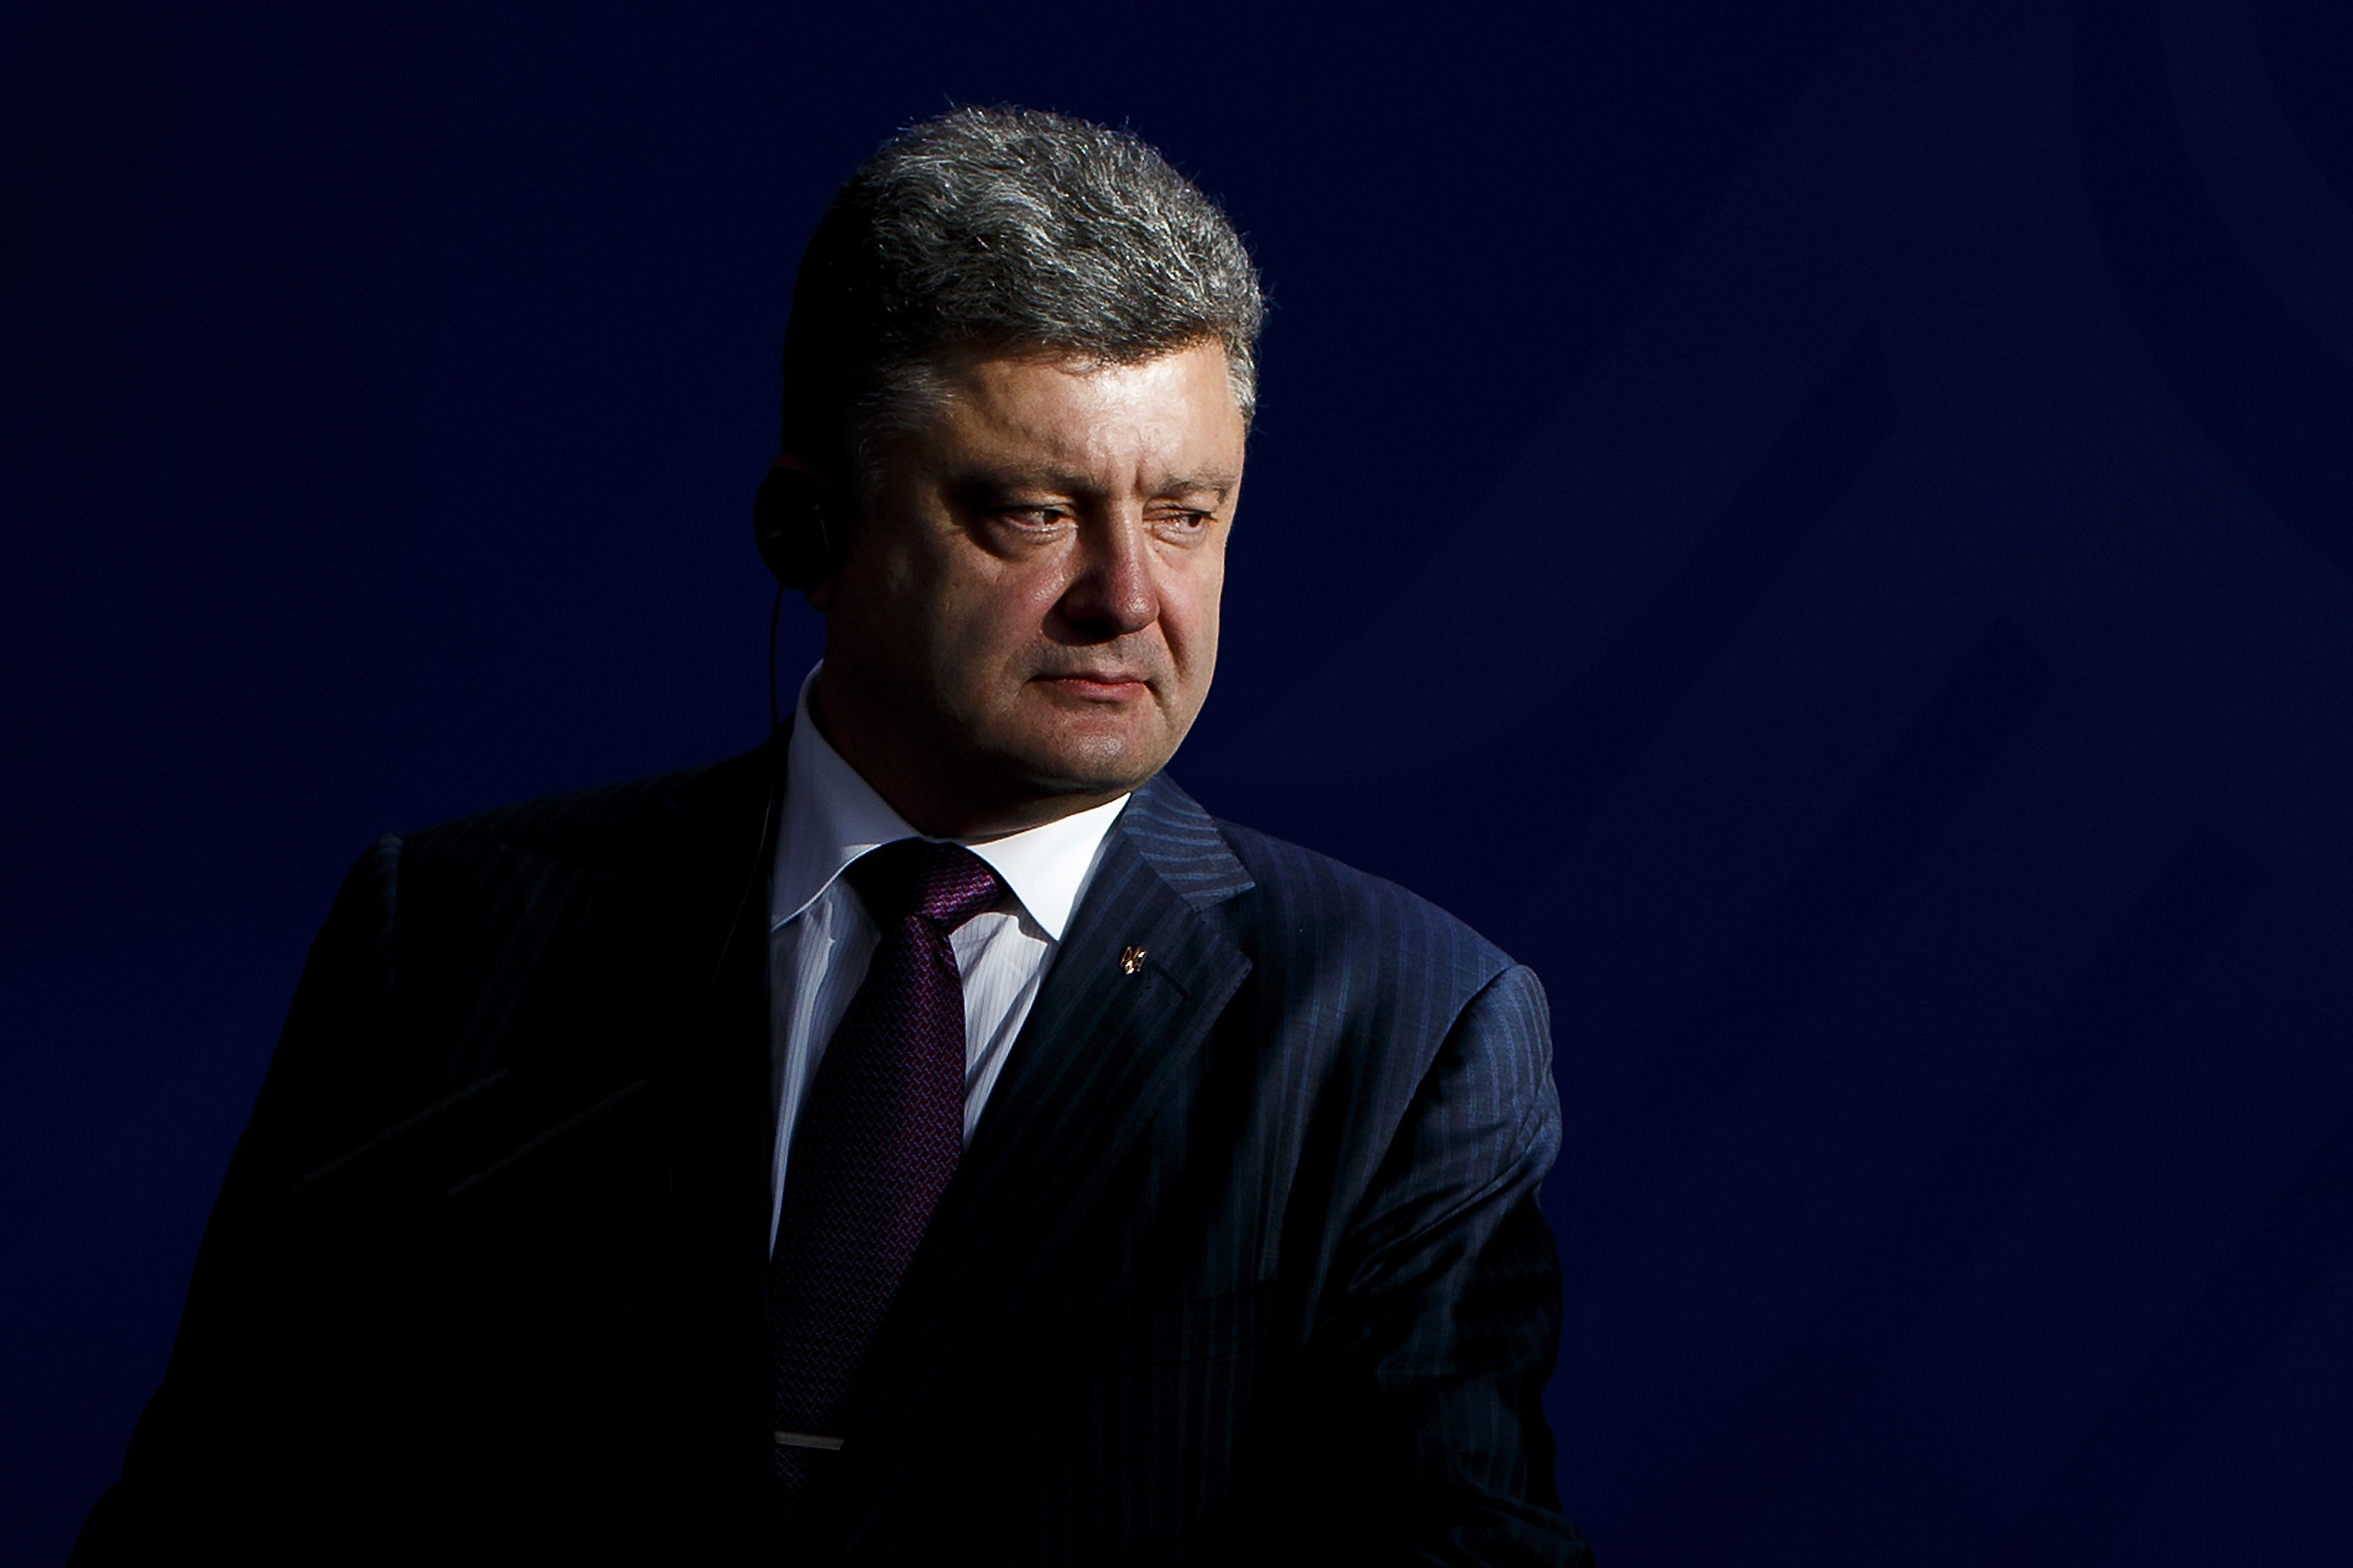 Ukrajina spustila lustraci. Oligarchů včetně prezidenta se netýká